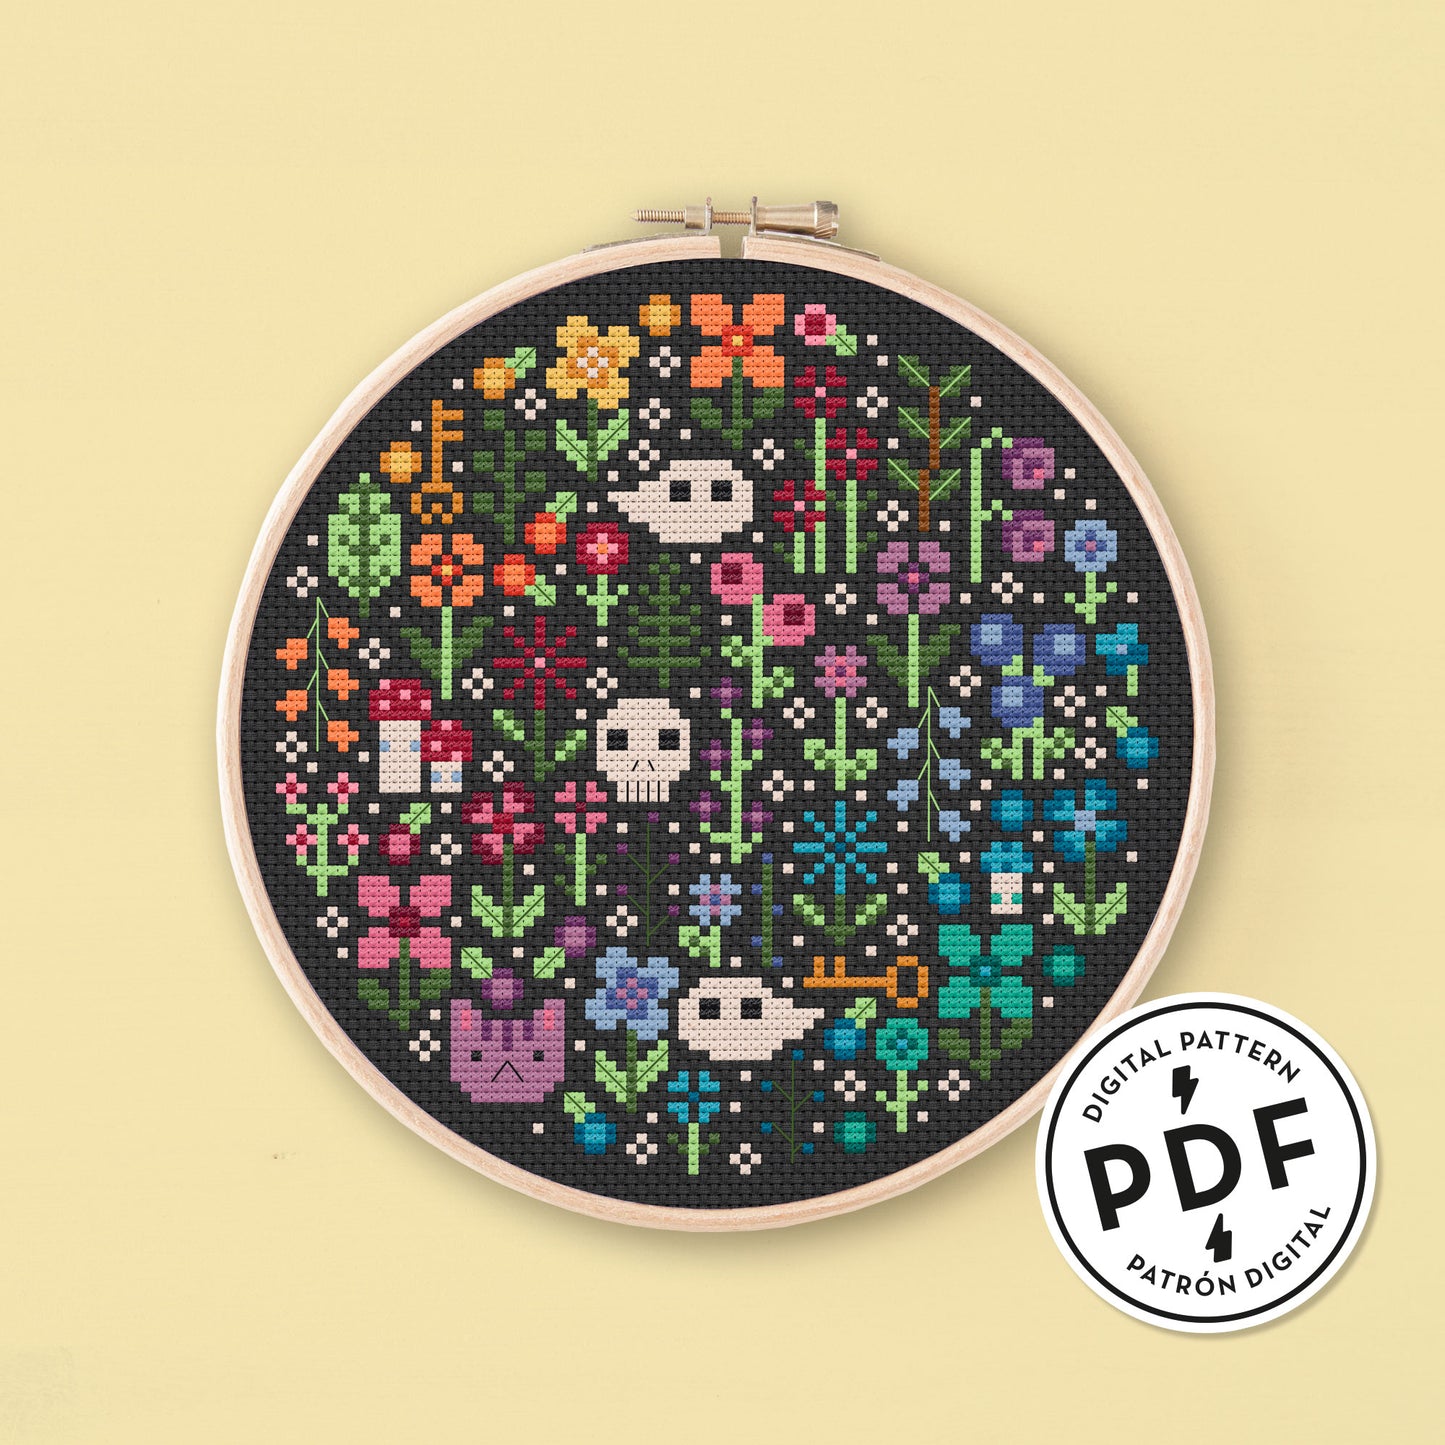 Muestra del Esquema de Punto de Cruz en PDF Mini Rainbow Garden. Bordado redondo de flores de colores del arcoiris, gatos, calaveras, fantasmas, setas y llaves. Punto de cruz sobre tela negra.